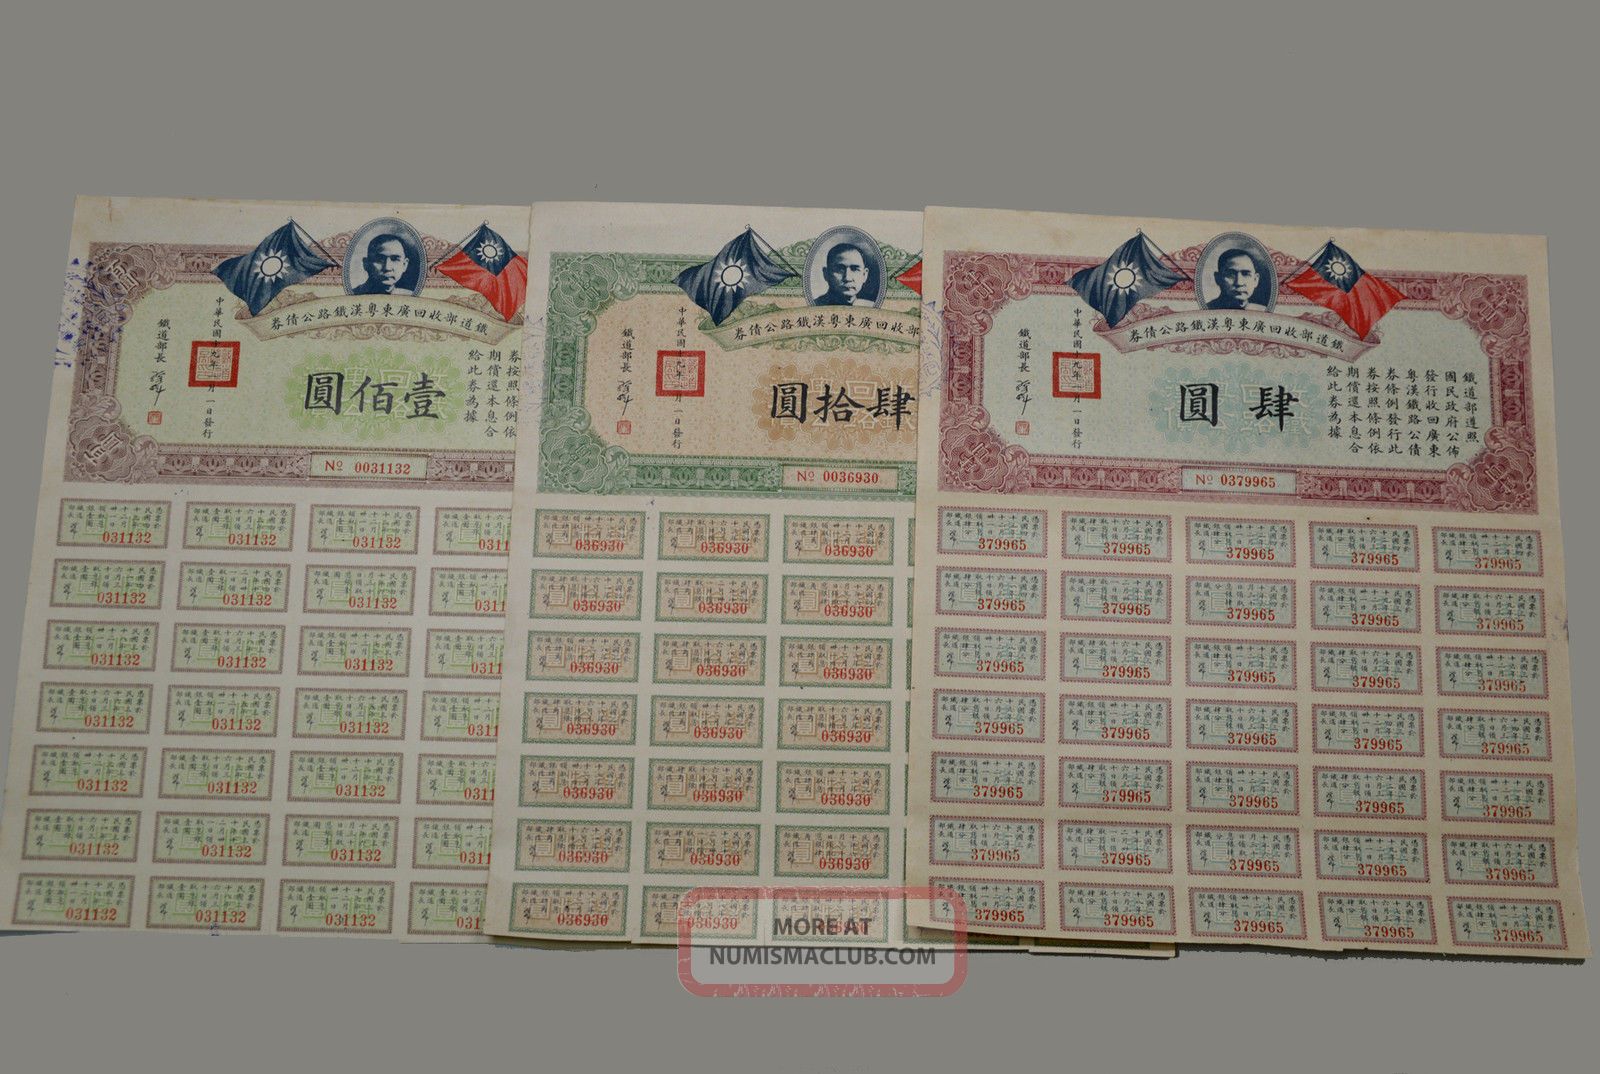 Kwangtung - Hankow Railway Bond China 4 Yuan,  40 Yuan & 100 Yuan 1930 Ef Stocks & Bonds, Scripophily photo